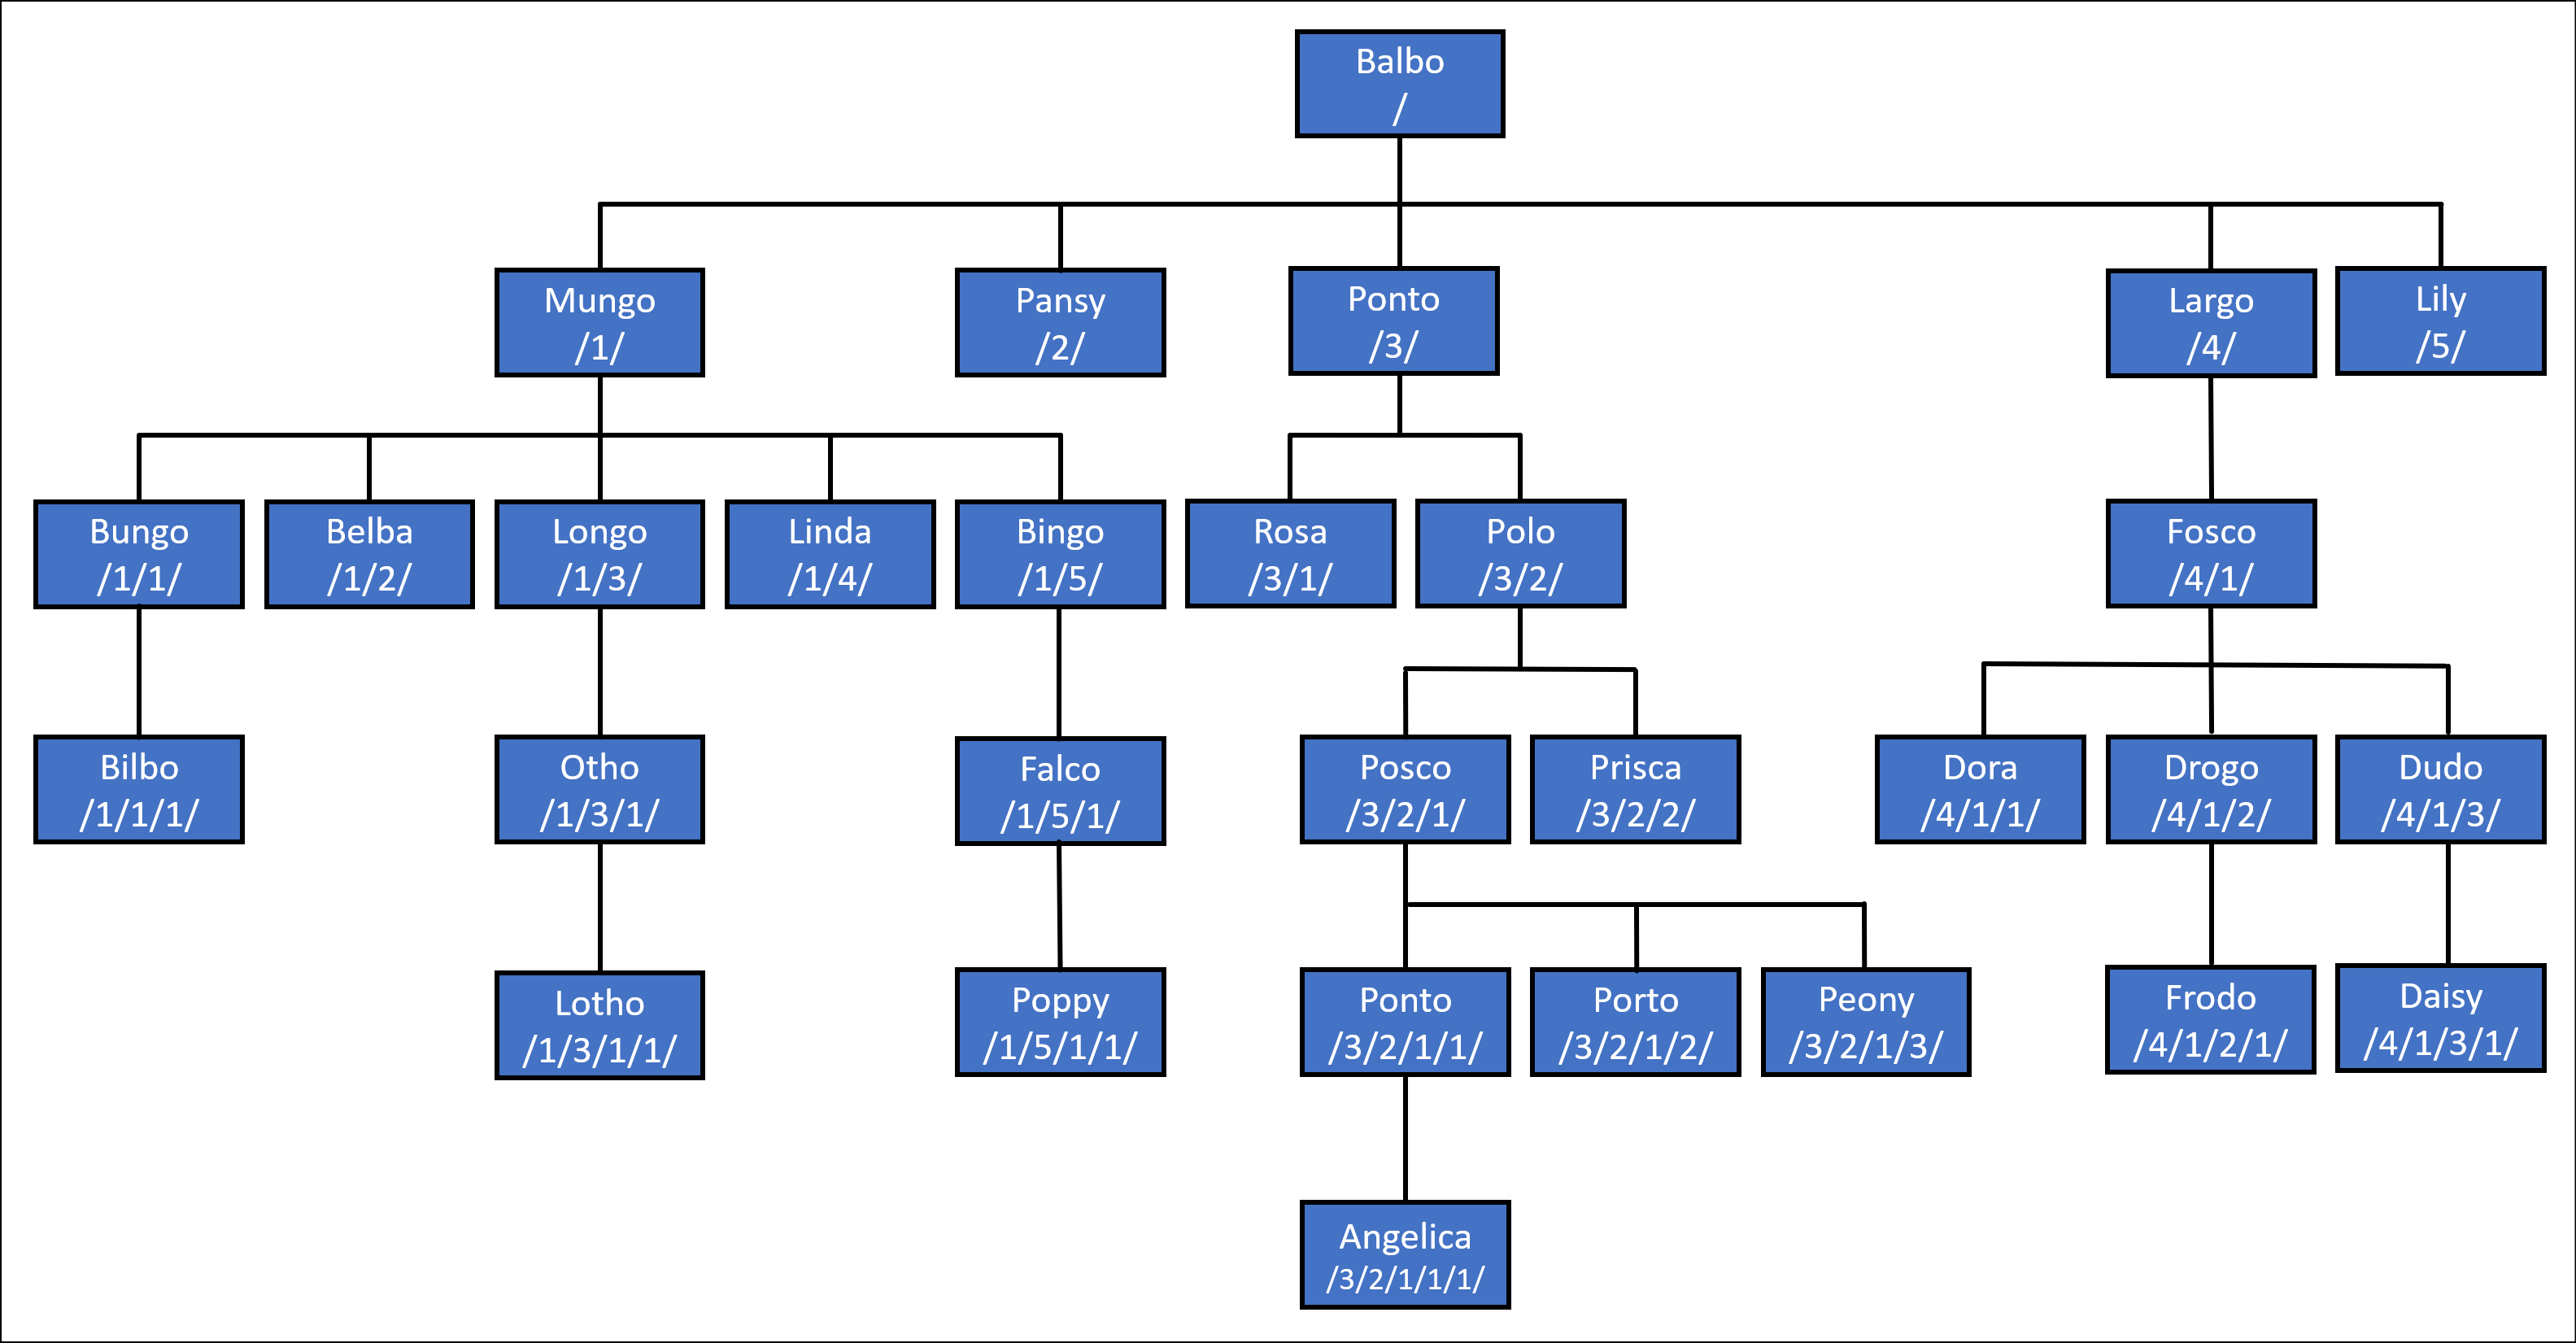 Hierarchy Tree